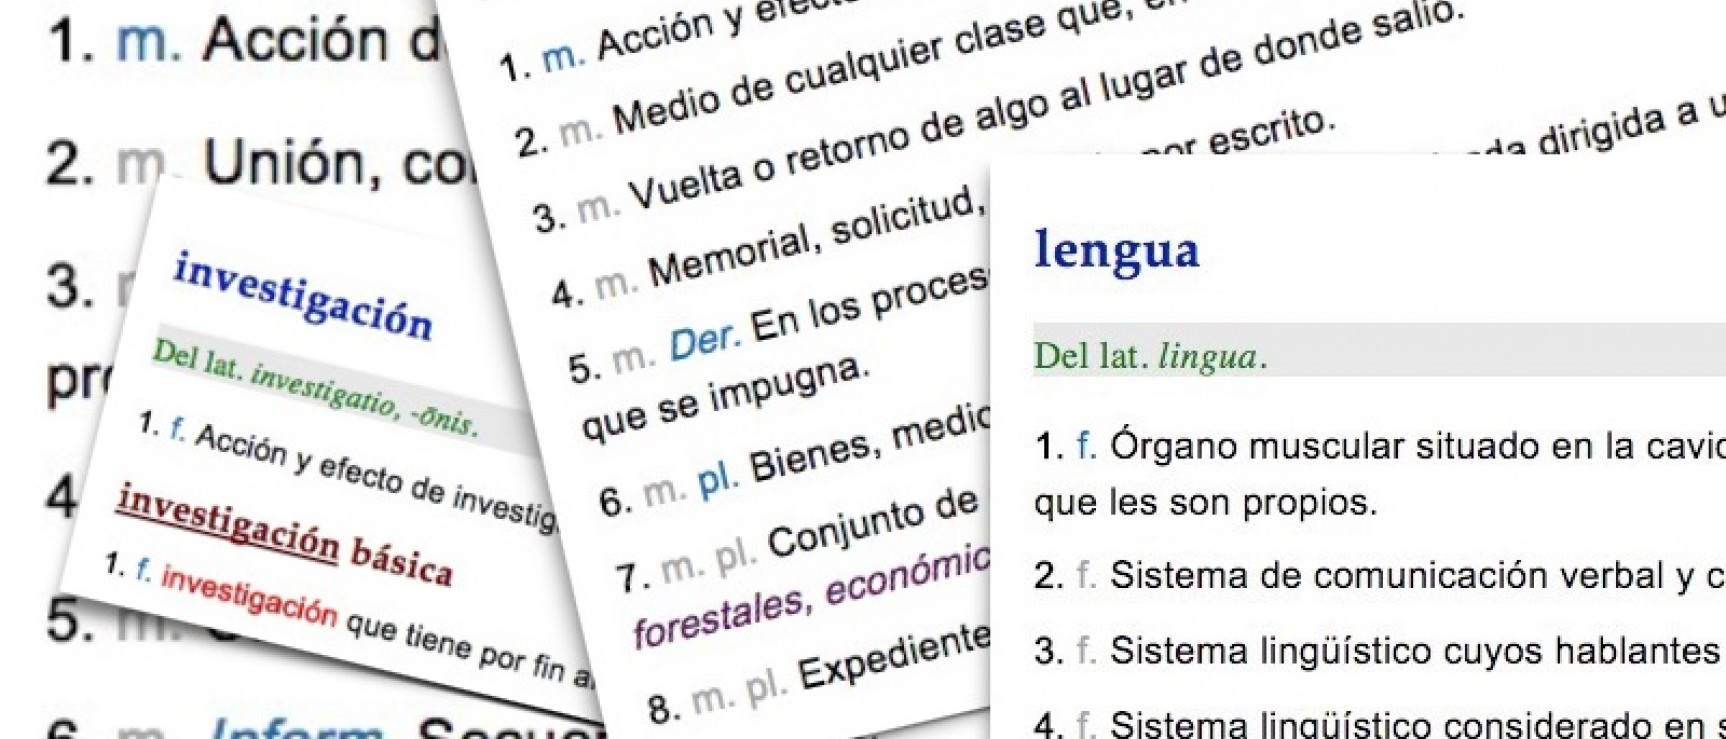 diccionario de la lengua espanola en linea